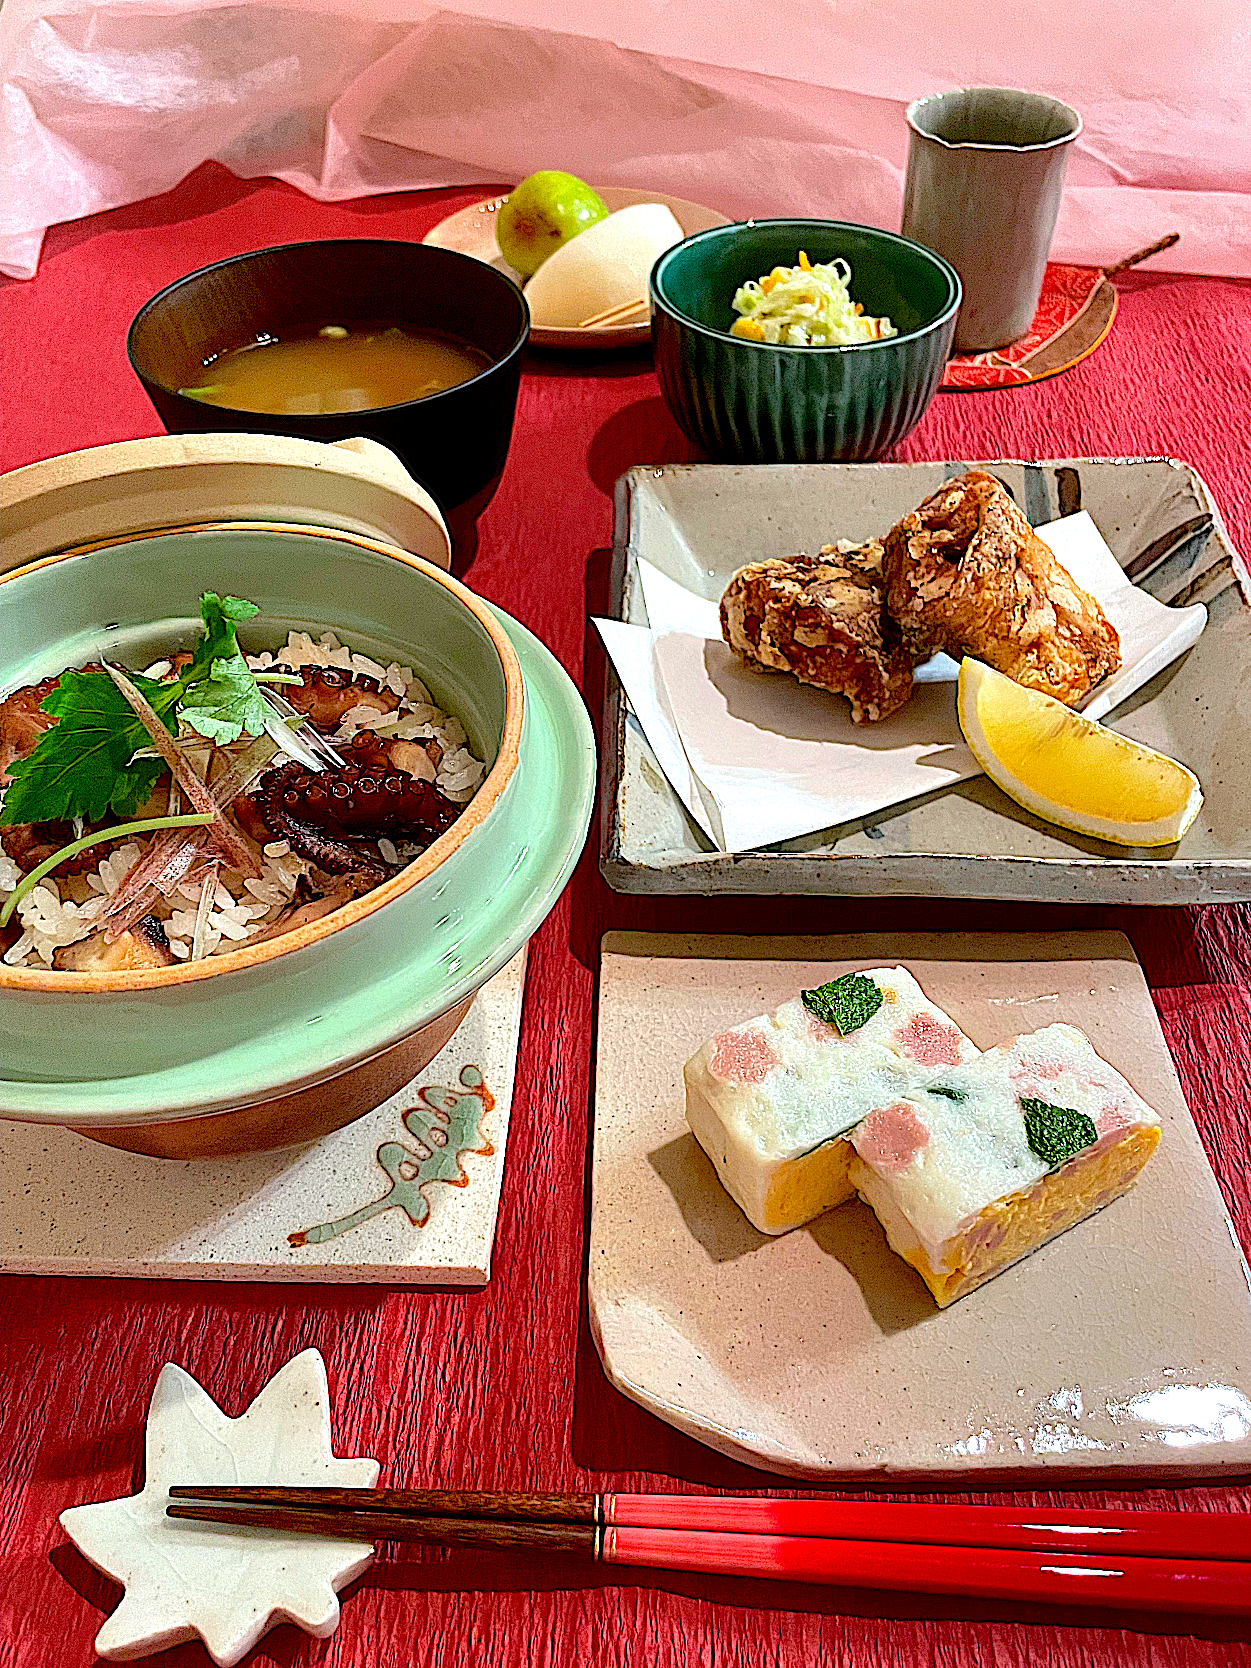 サミカさんの料理 明石蛸釜飯で休日のお昼ご飯